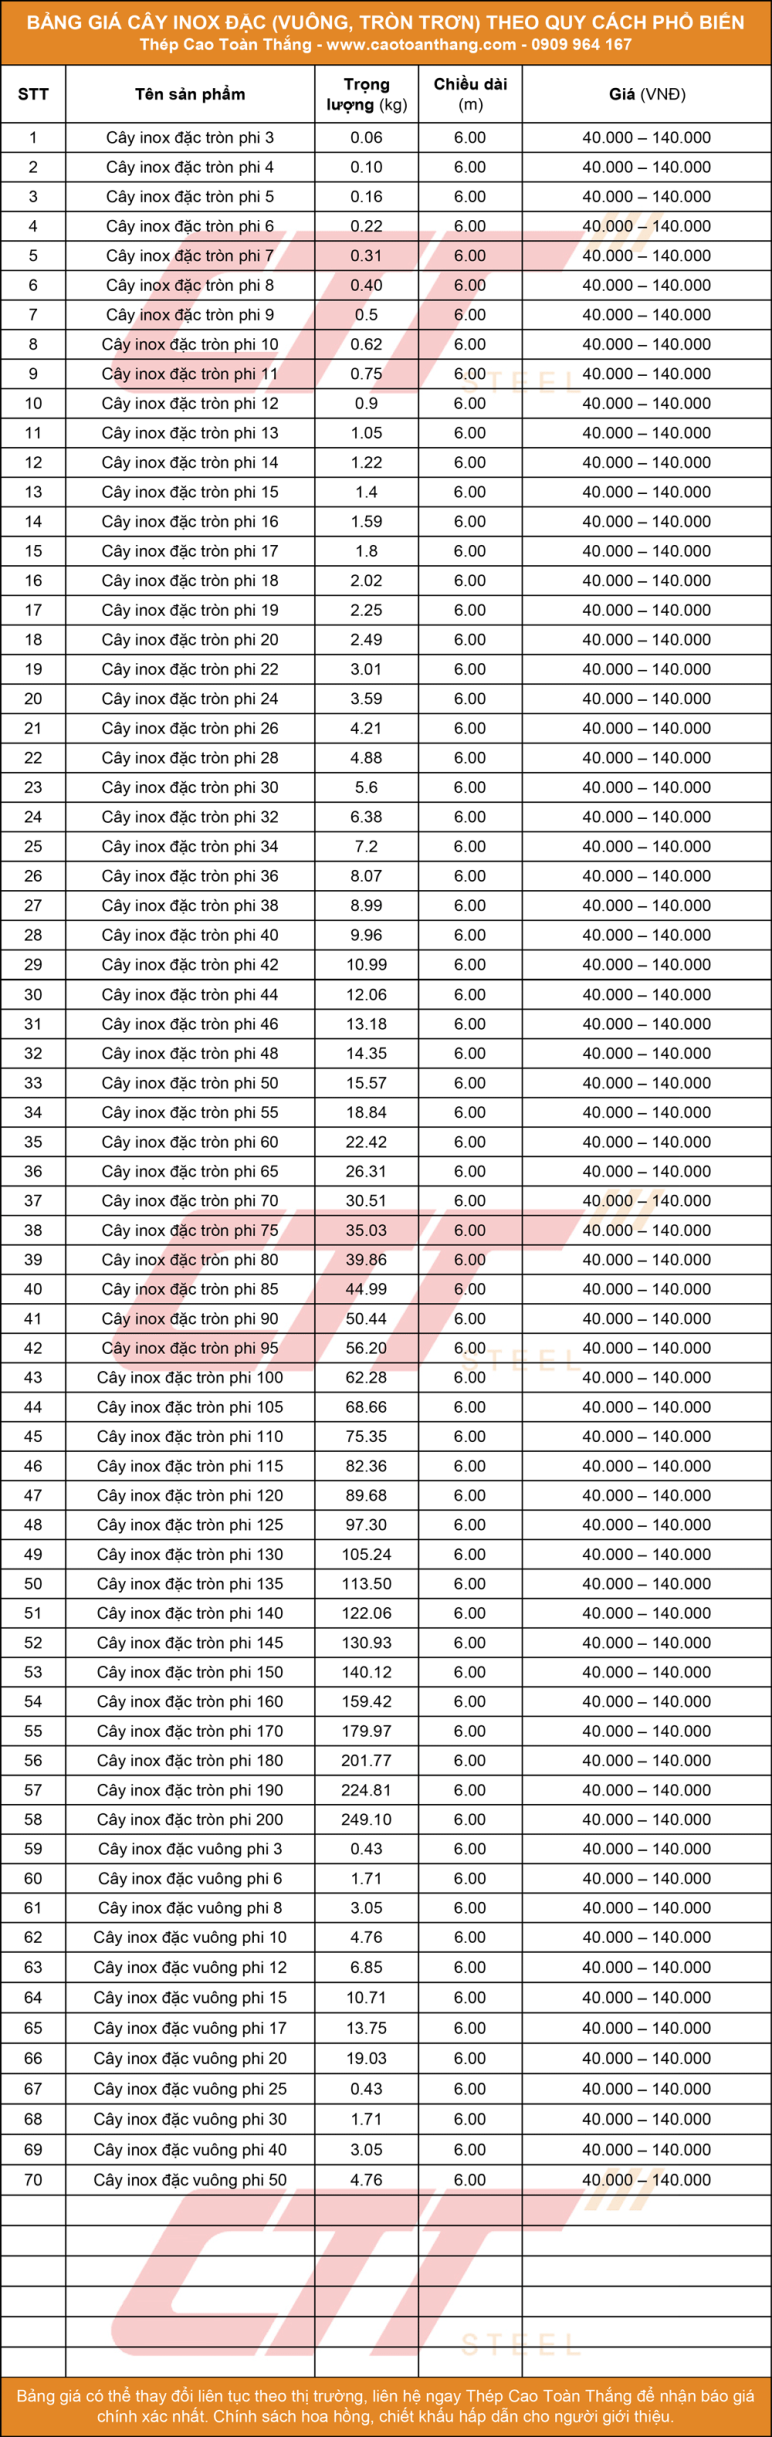 Bảng báo giá cây inox đặc được cập nhật mới nhất tại Thép Cao Toàn Thắng 